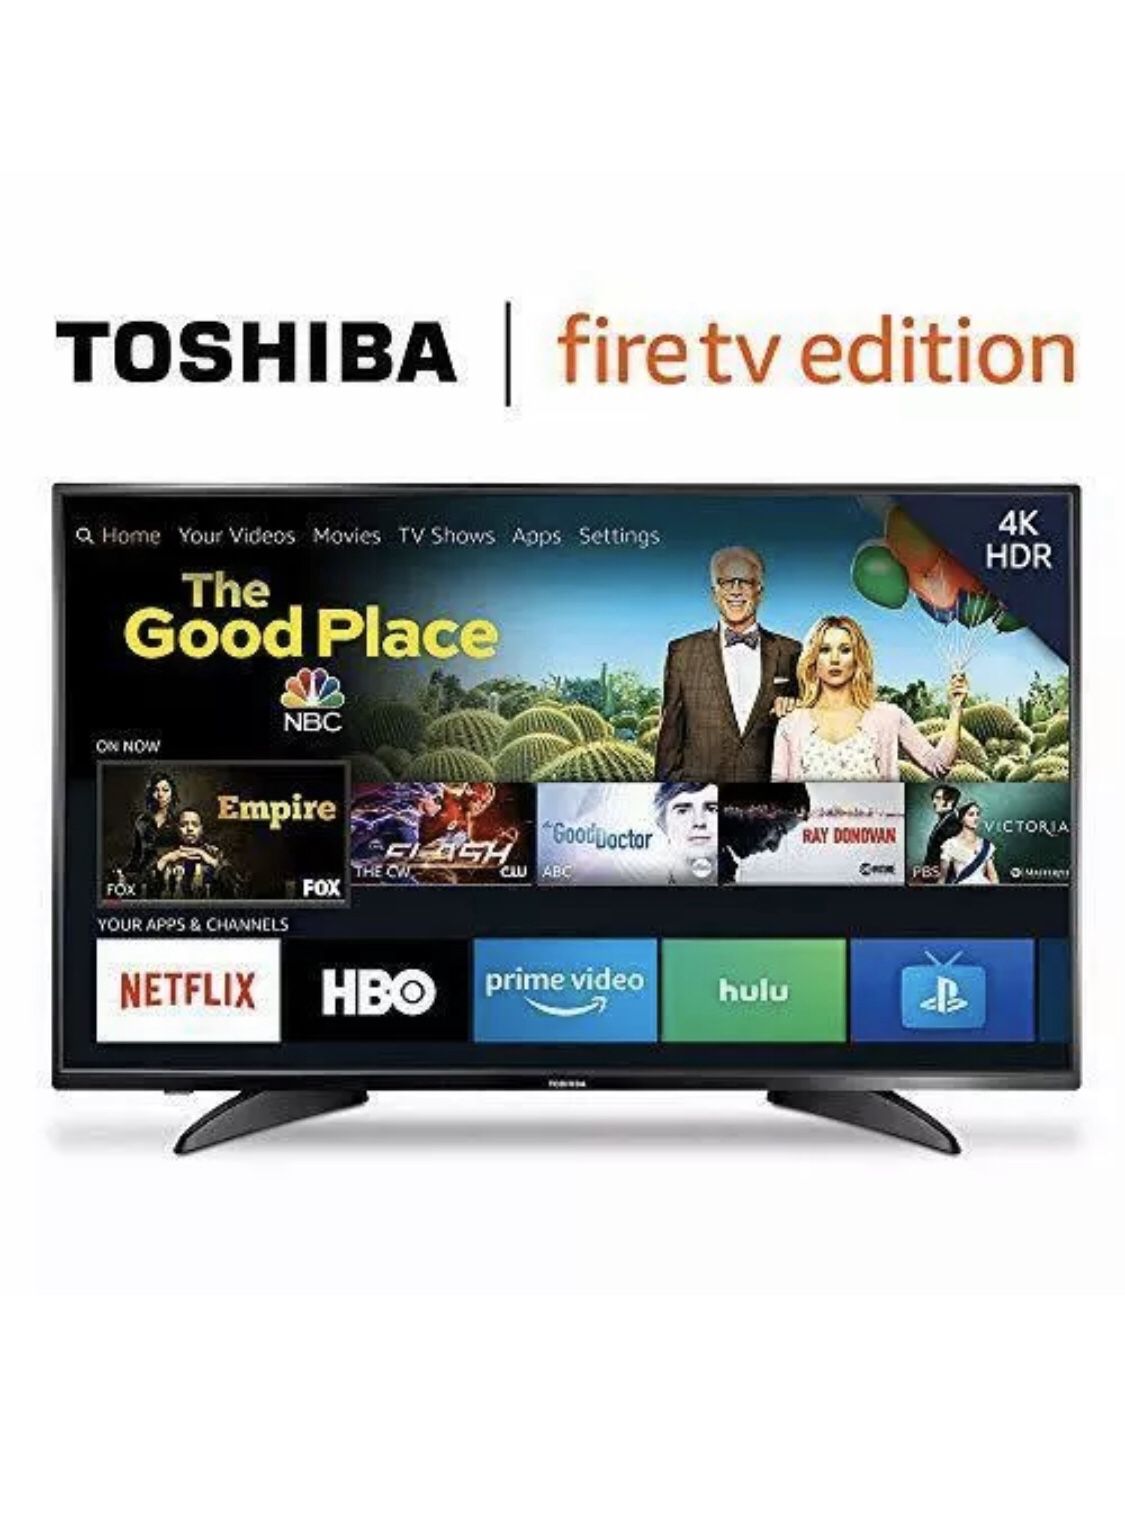 Toshiba fire TV jailbroken